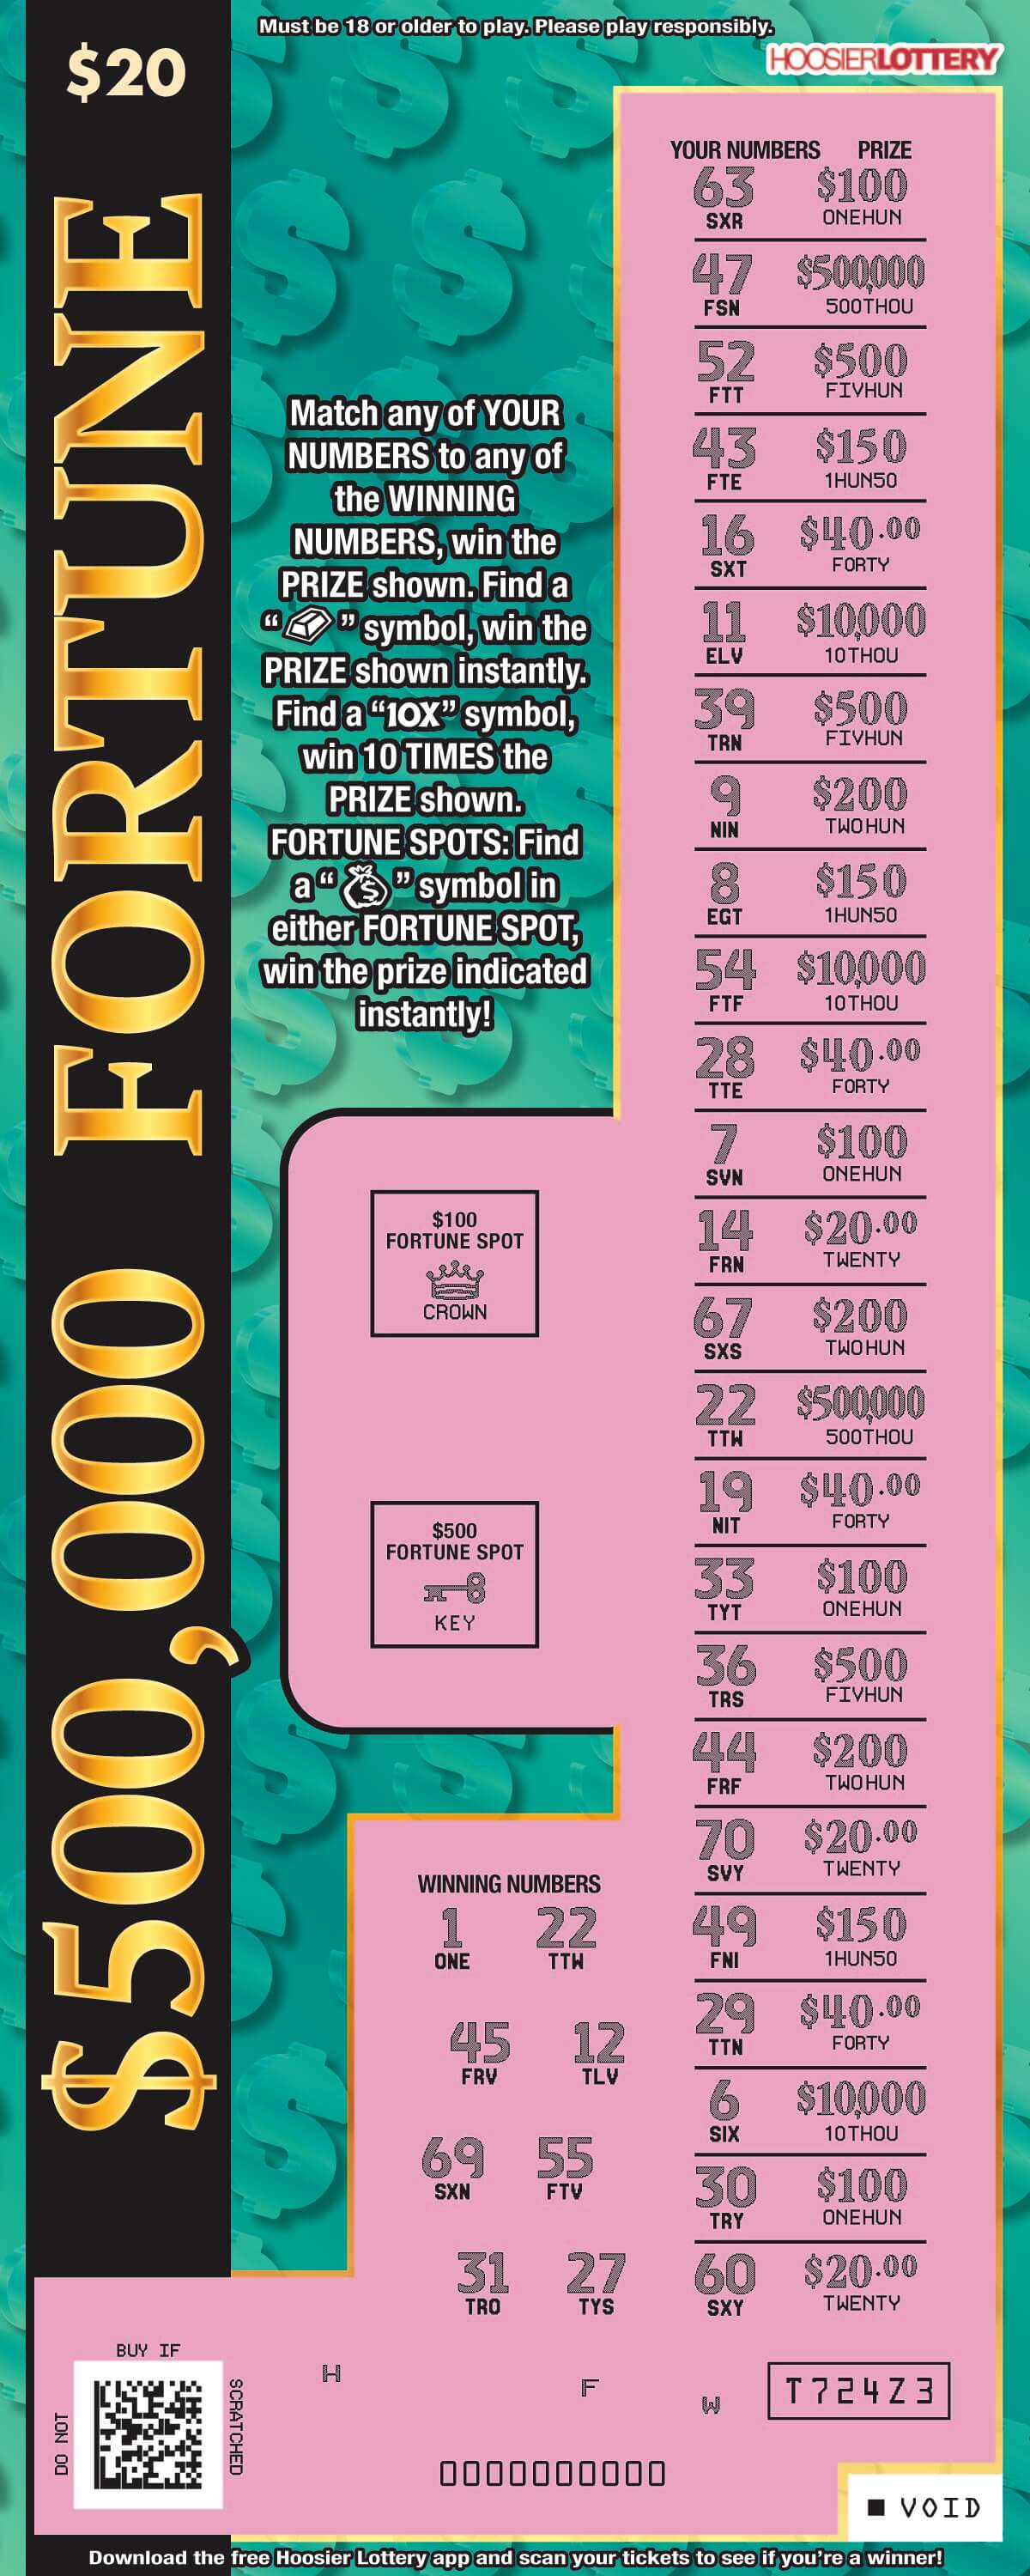 $500,000 FORTUNE